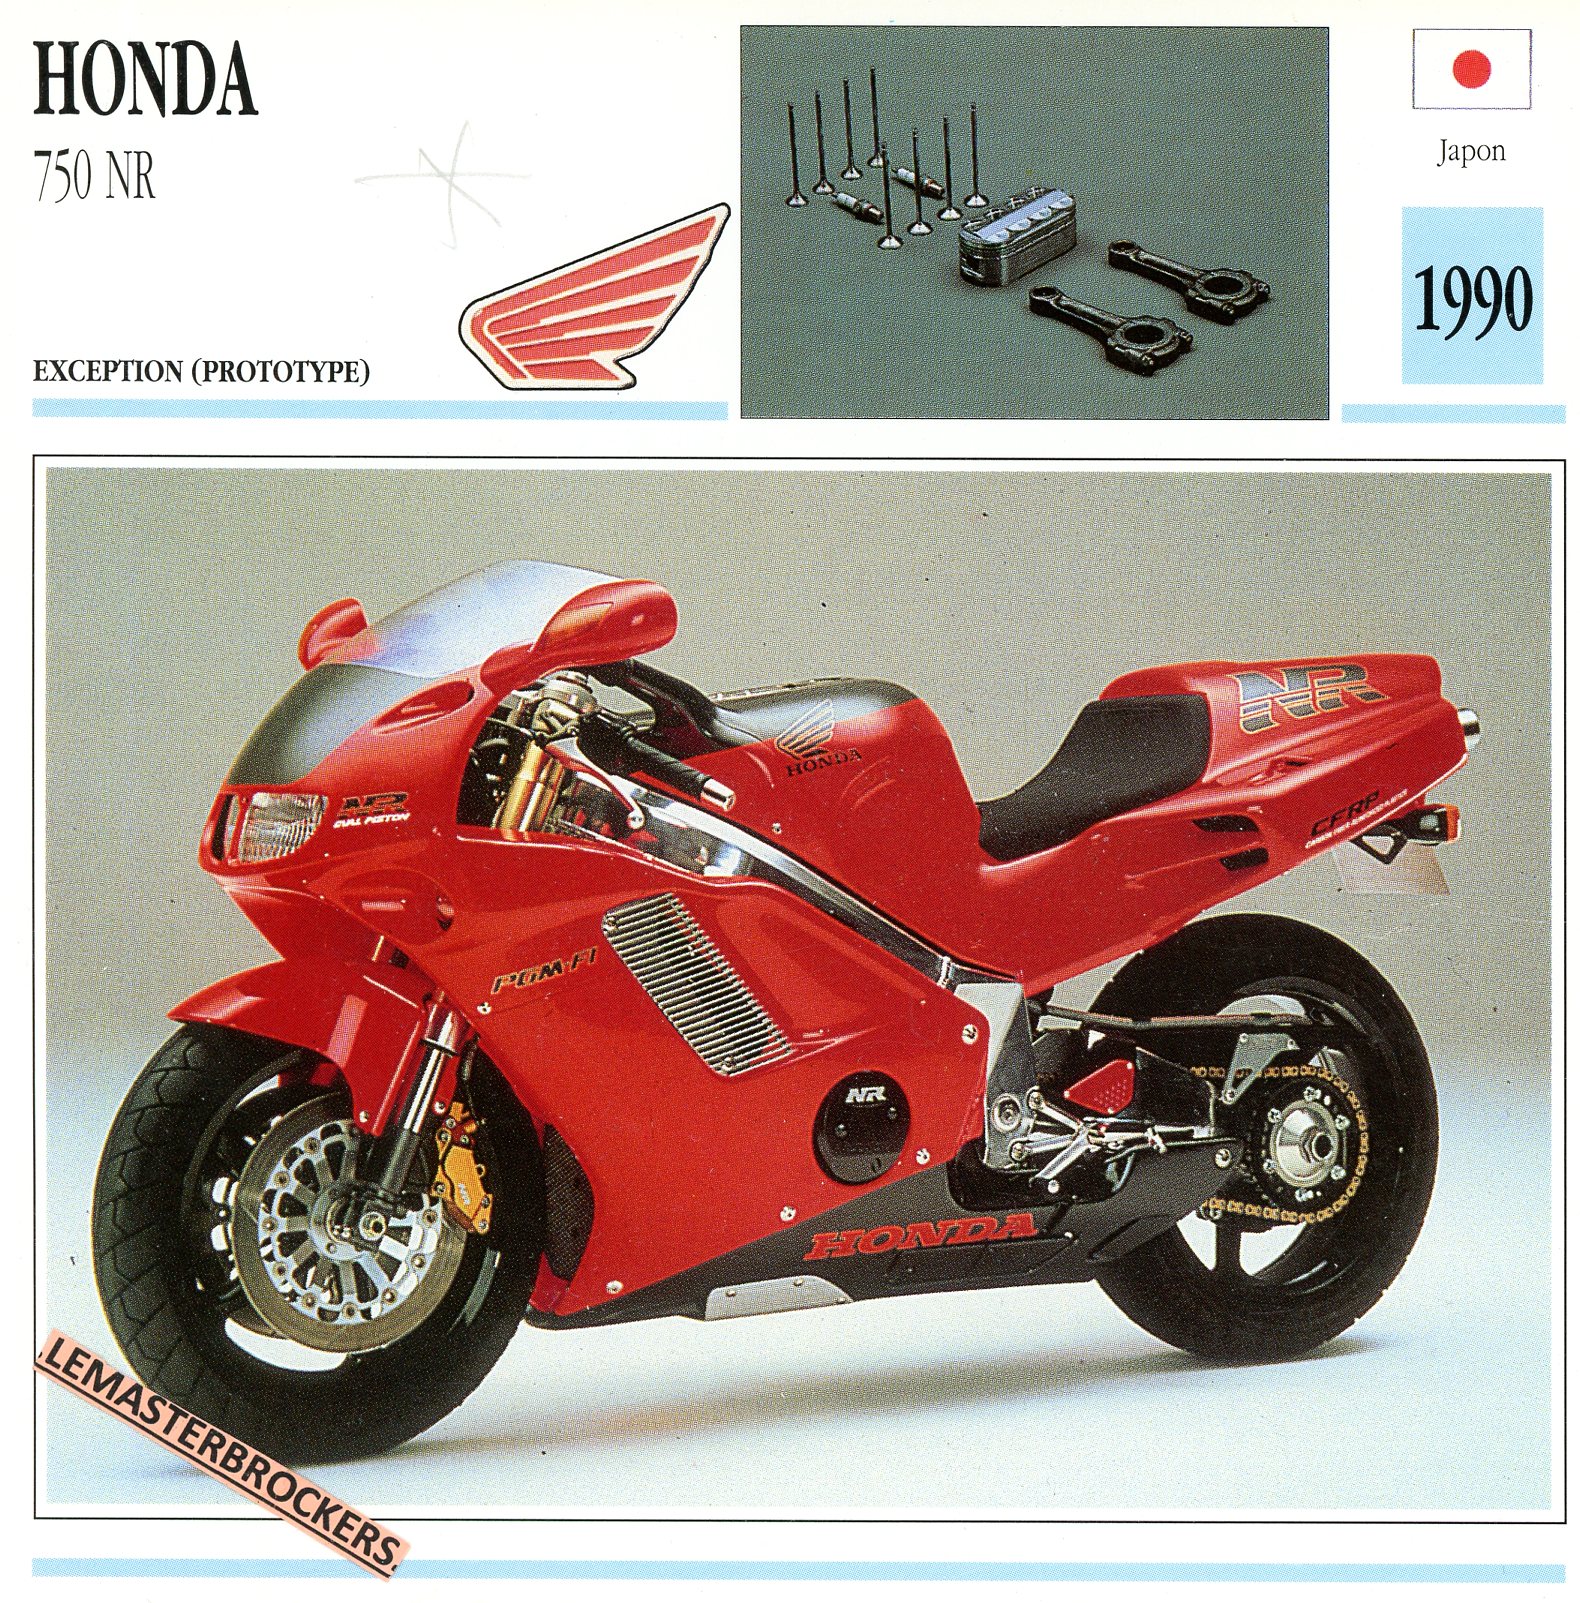 FICHE-MOTO-HONDA-NR-750-750NR-1990-LEMASTERBROCKERS-CARS-MOTORCYCLE